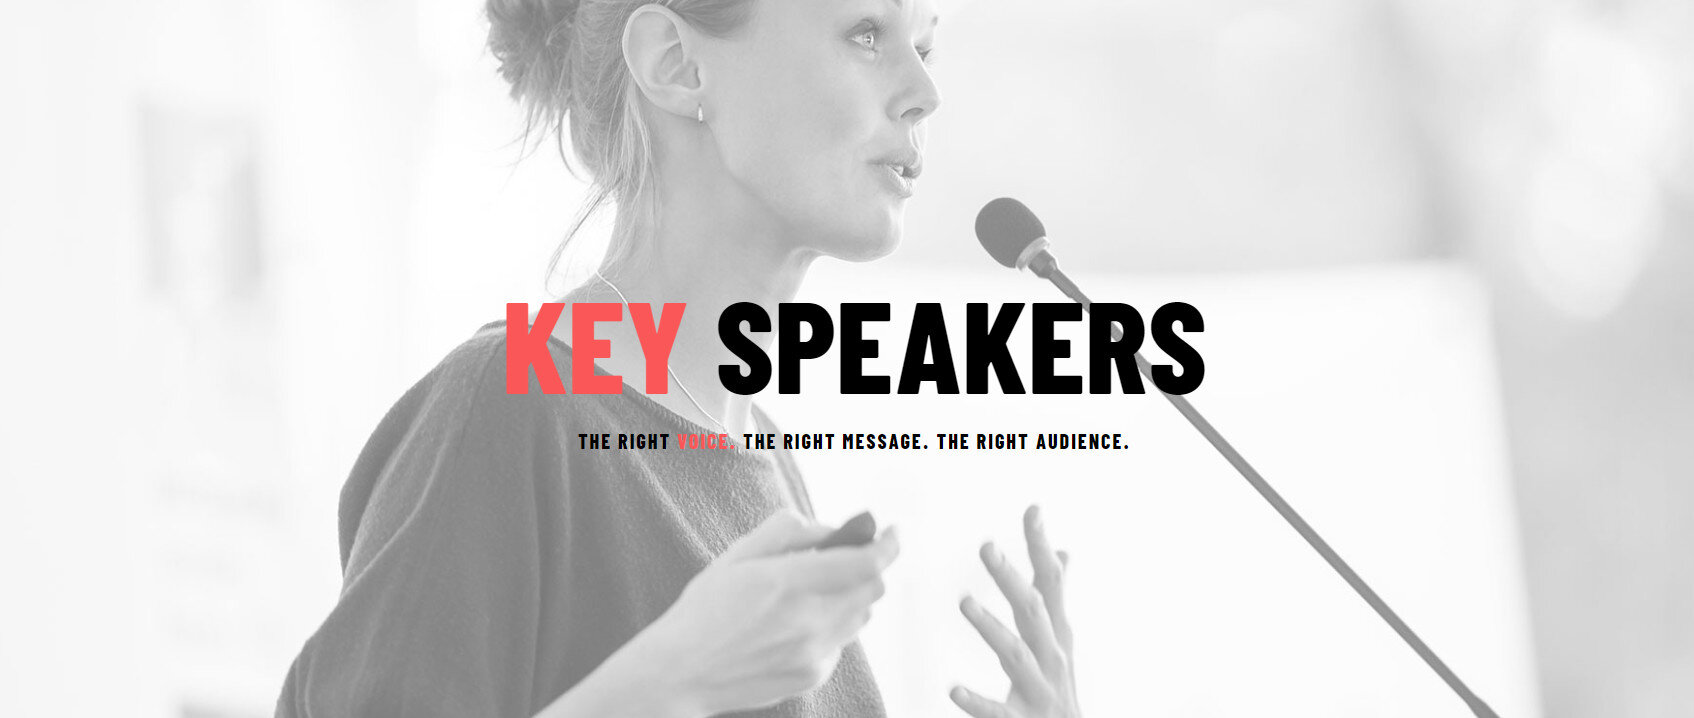 Key Speakers Image 3.jpg